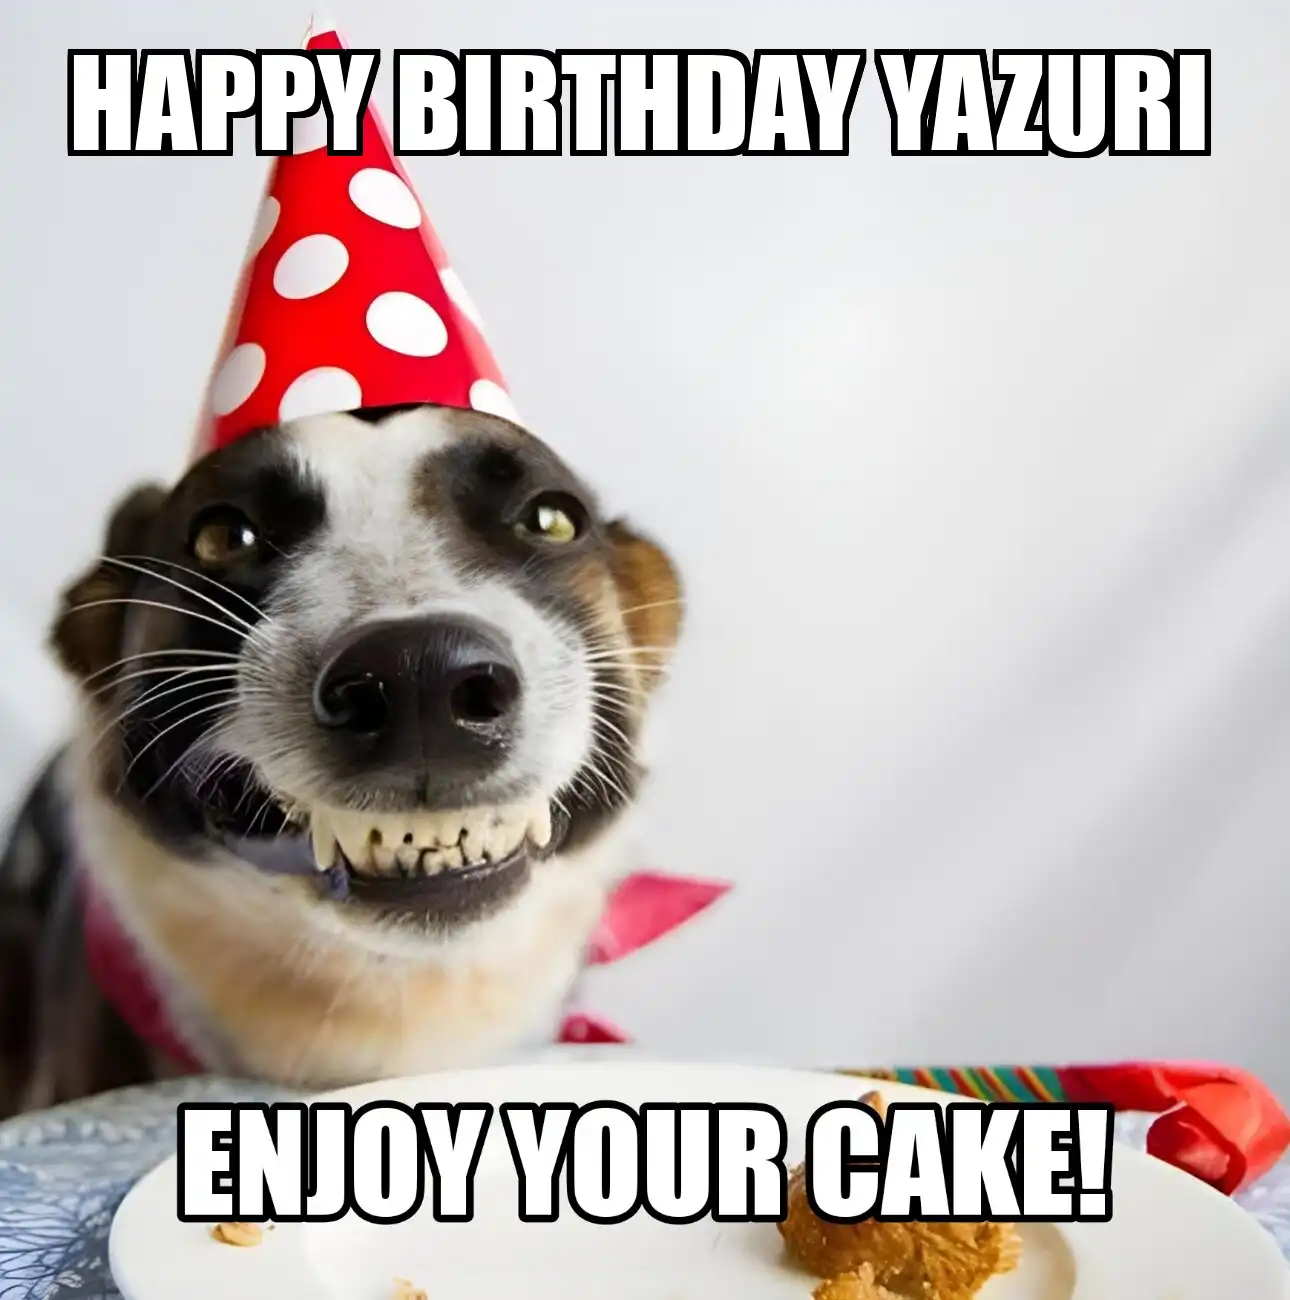 Happy Birthday Yazuri Enjoy Your Cake Dog Meme